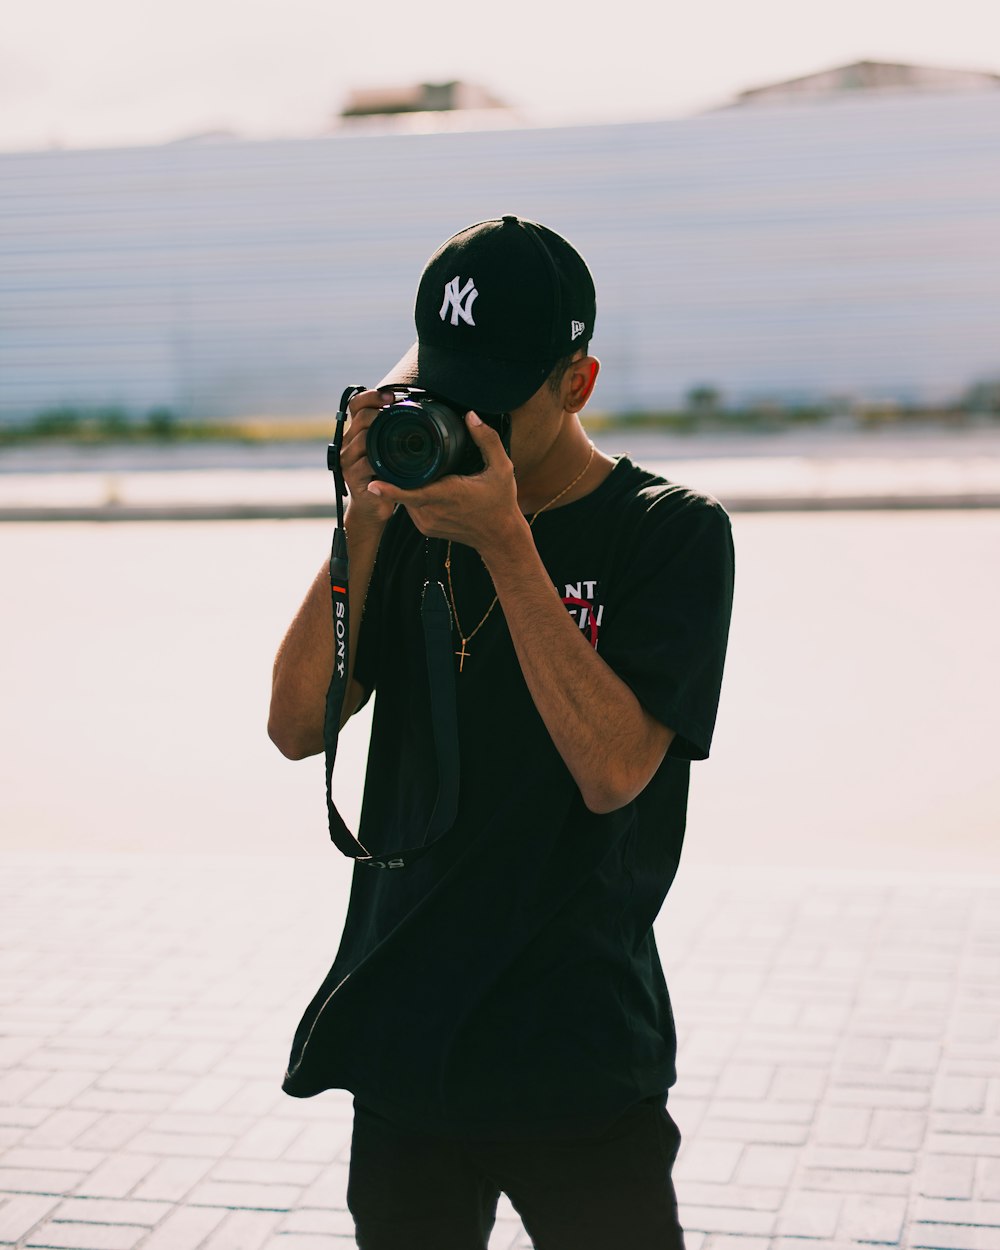 Hombre con camiseta negra sosteniendo una cámara DSLR negra